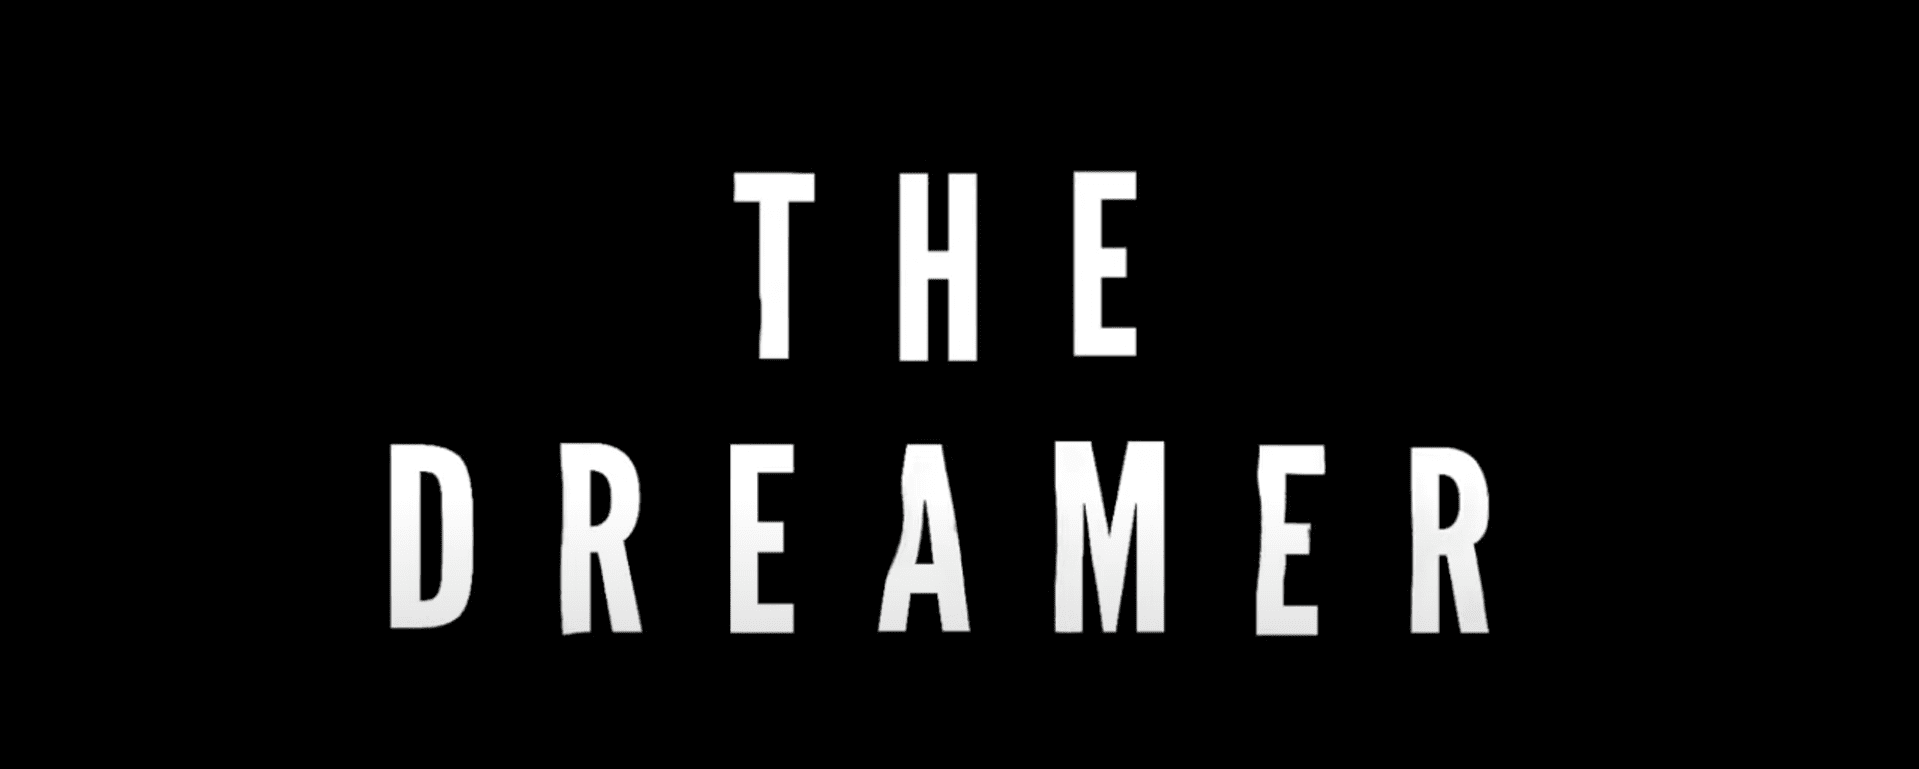 The Dreamer 2019 Horror Short Film review